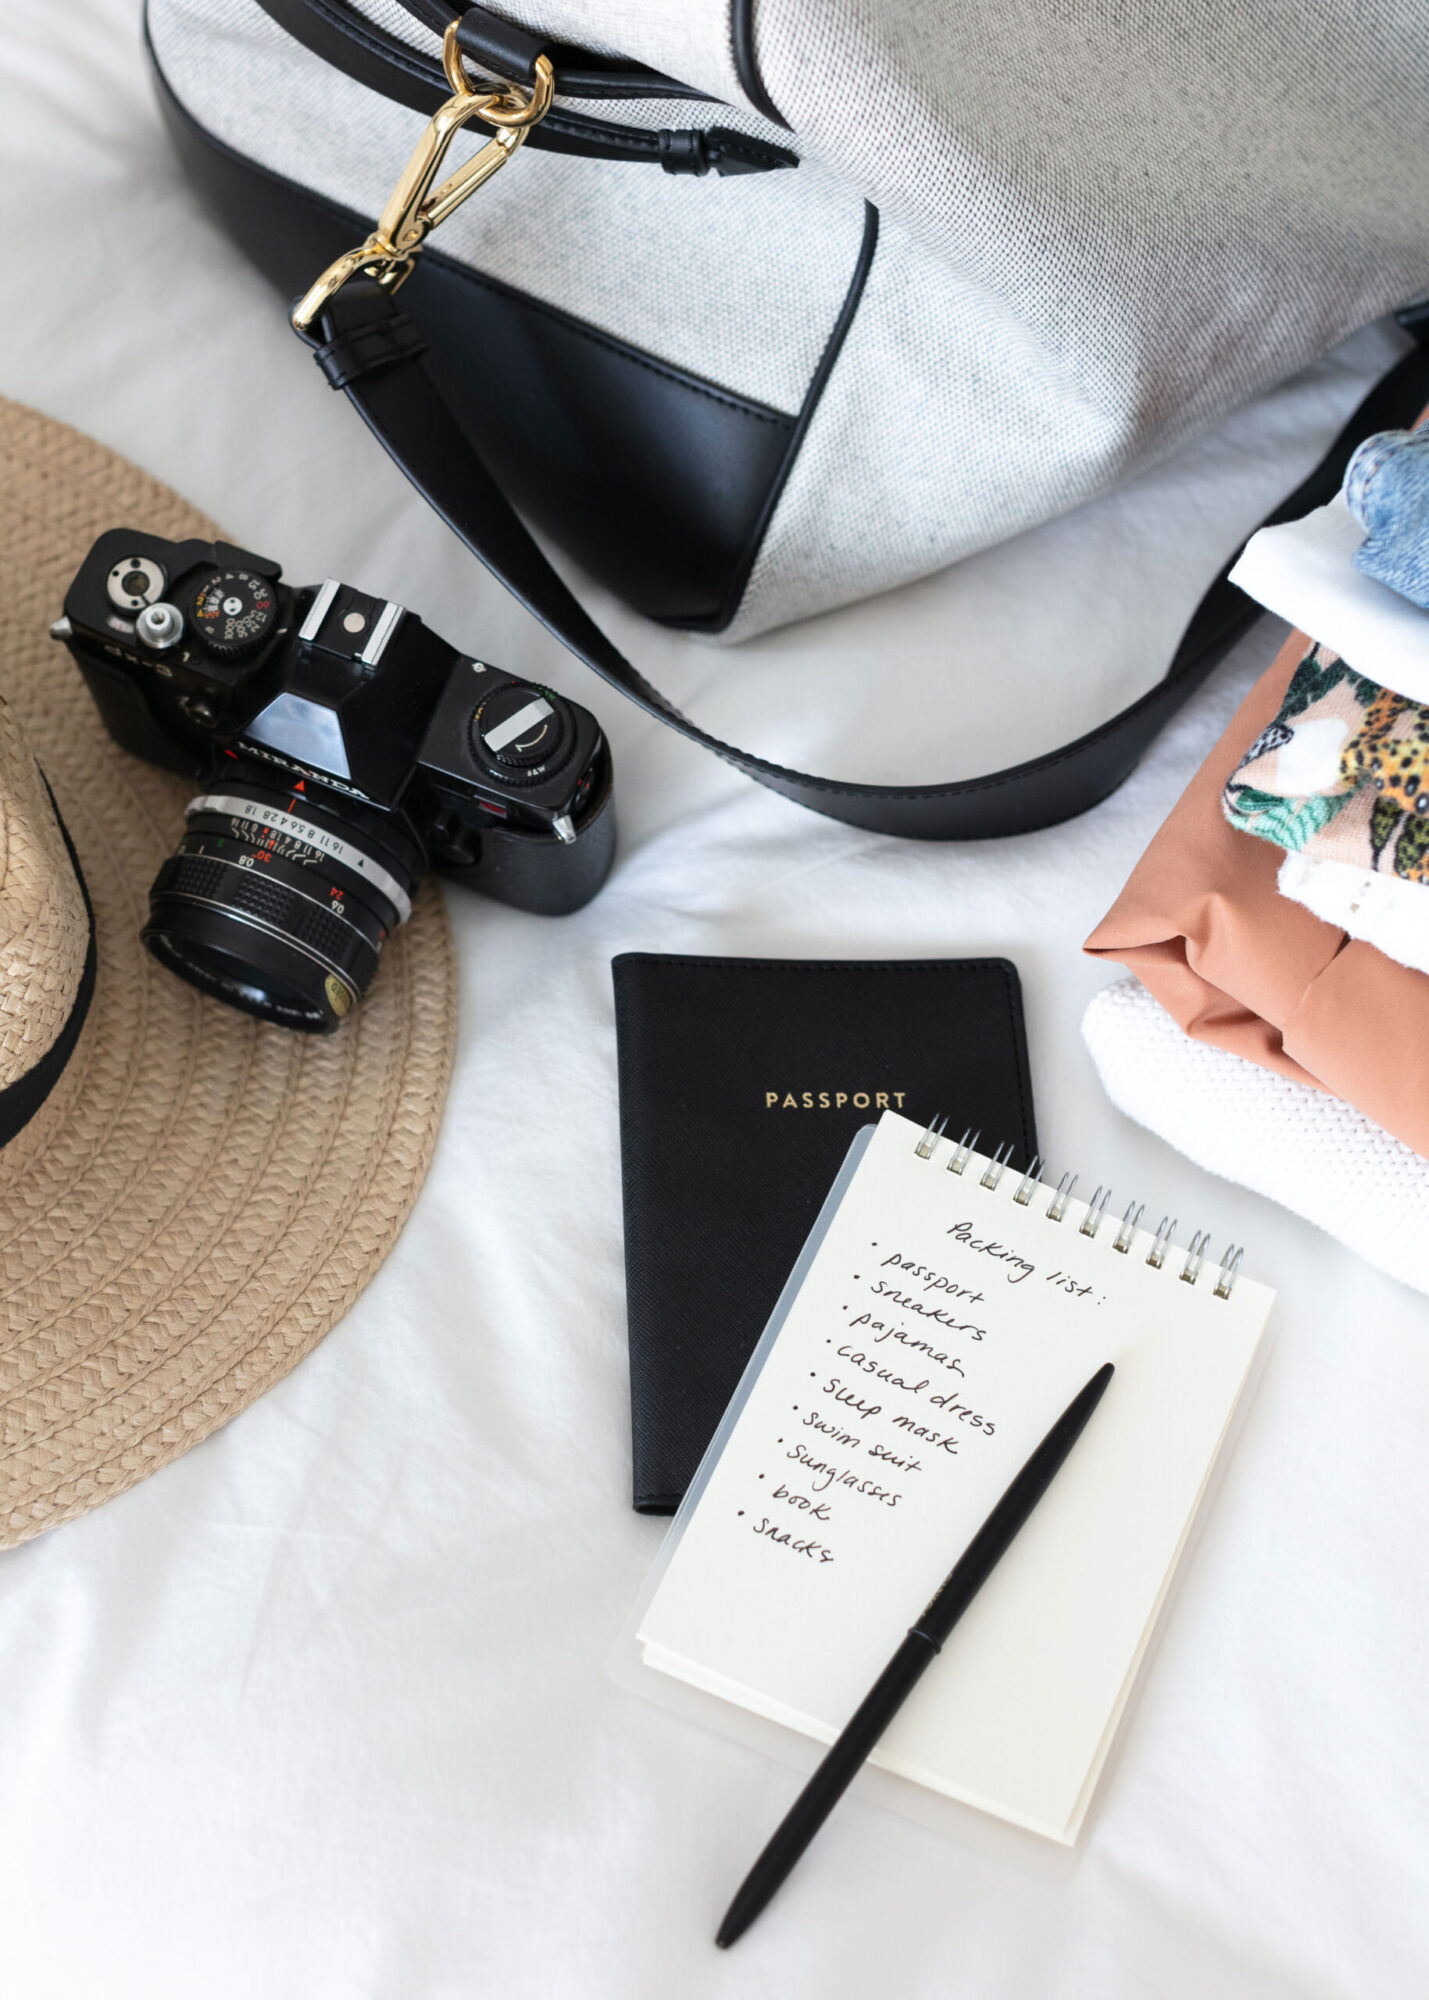 international travel essentials such as bag, hat, passport, clothes.